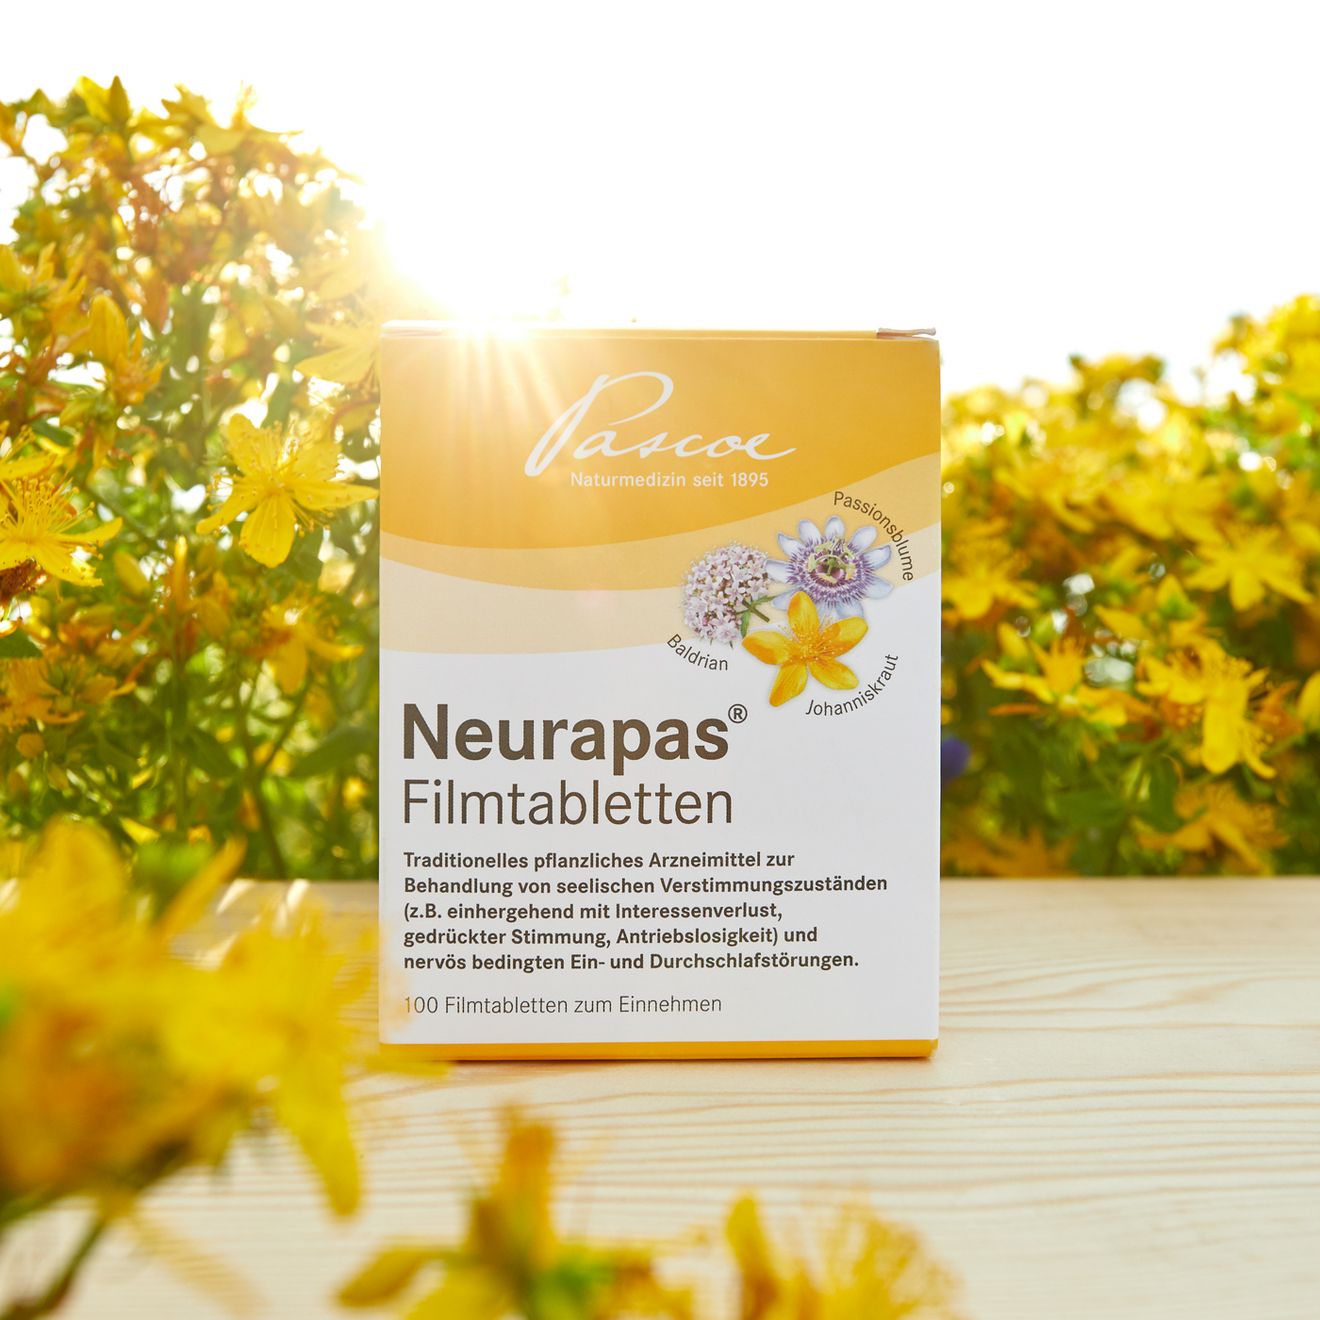 Neurapas® Filmtabletten: Mit starken Heilpflanzen